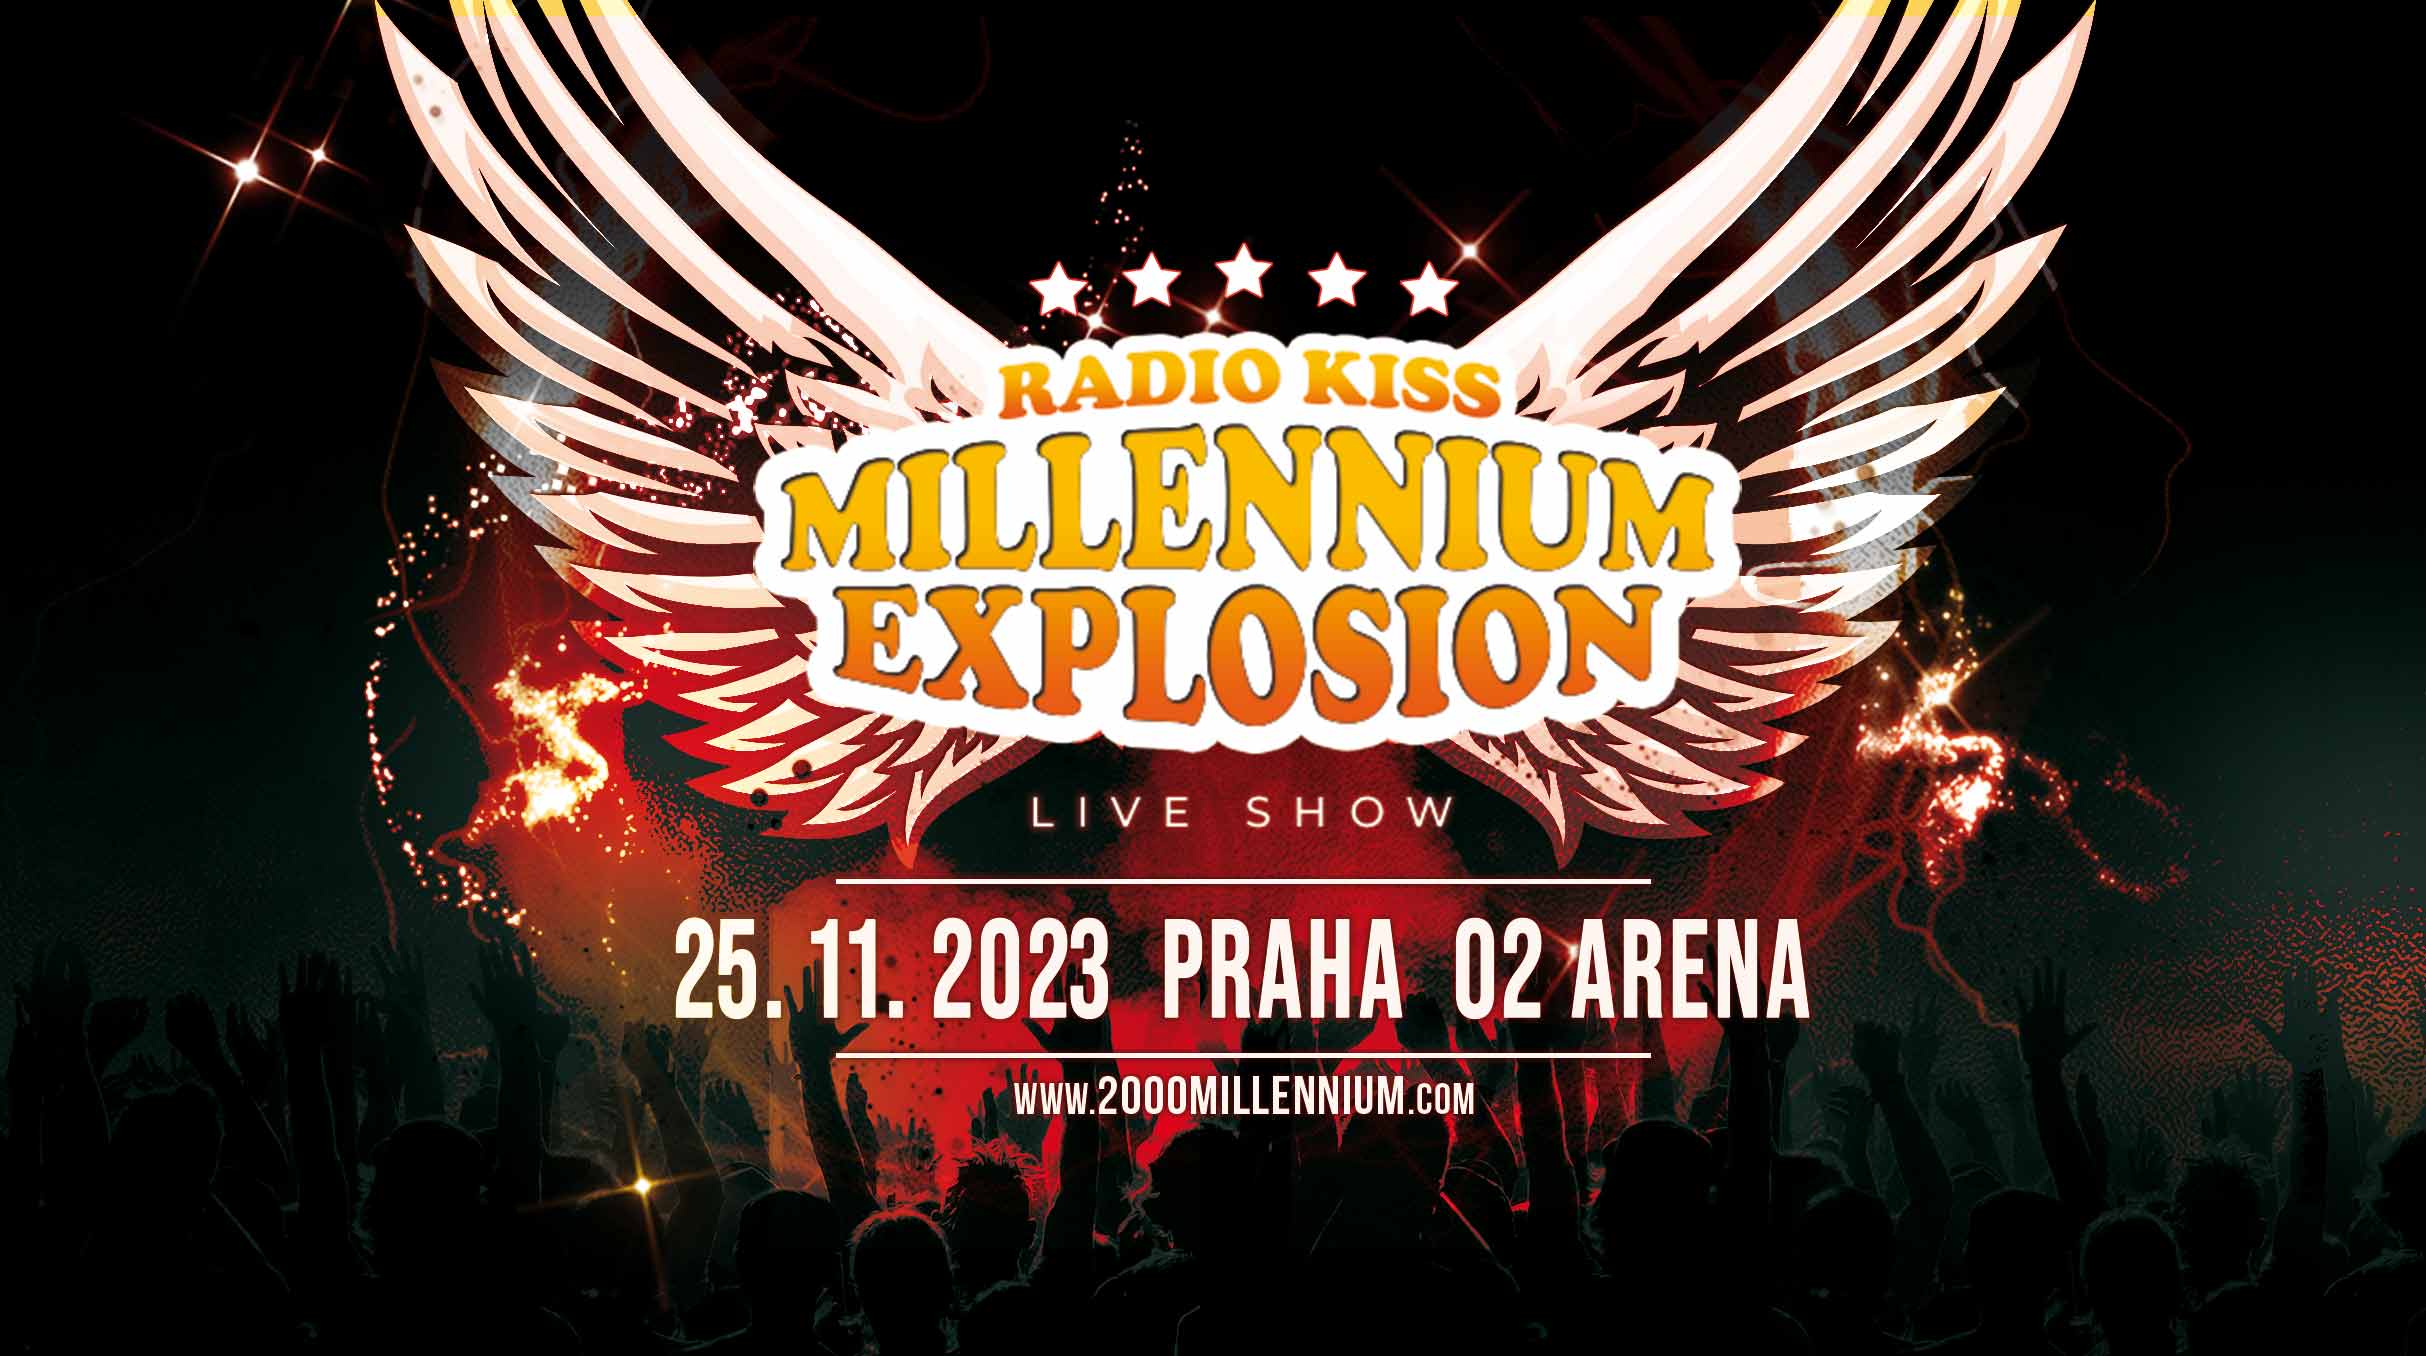 Radio Kiss Millennium Explosion- Praha O2 arena- Cascada, Inna, DJ Antoine, Lou Bega a další -O2 arena Praha 9 Českomoravská 2345/17a, Praha 9 19000